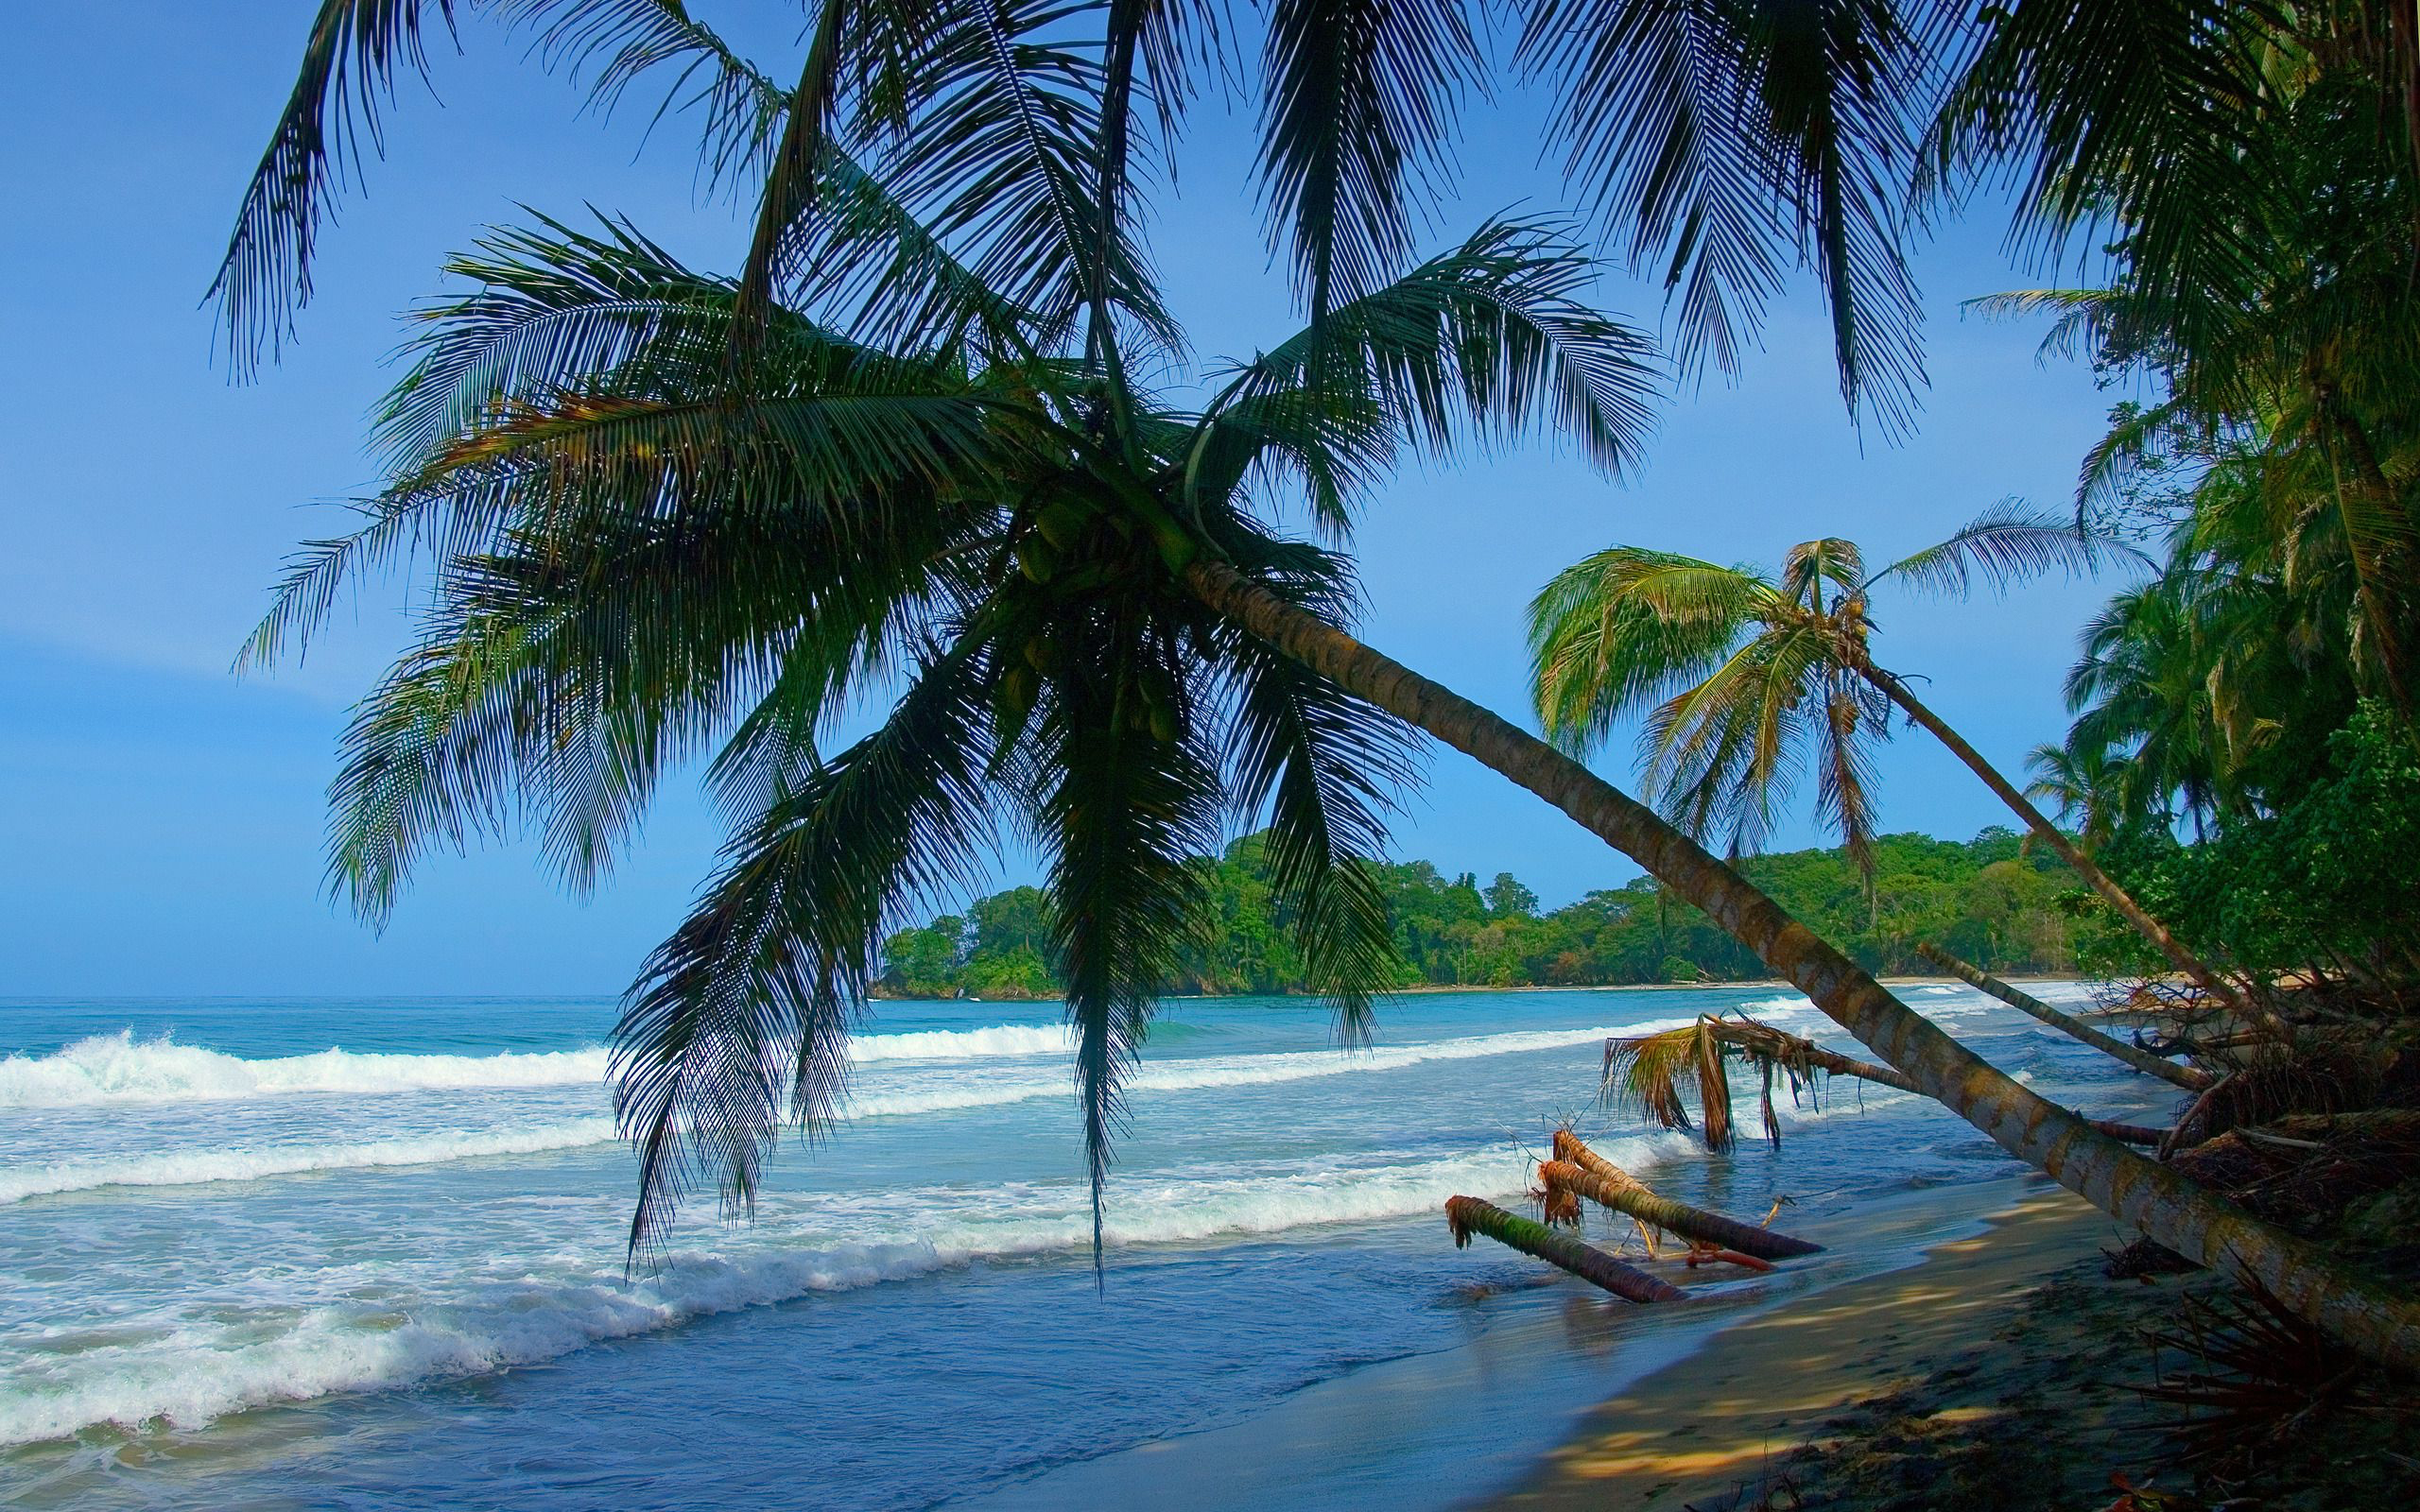 Скачать обои бесплатно Пляж, Океан, Пальма, Тропический, Земля/природа картинка на рабочий стол ПК